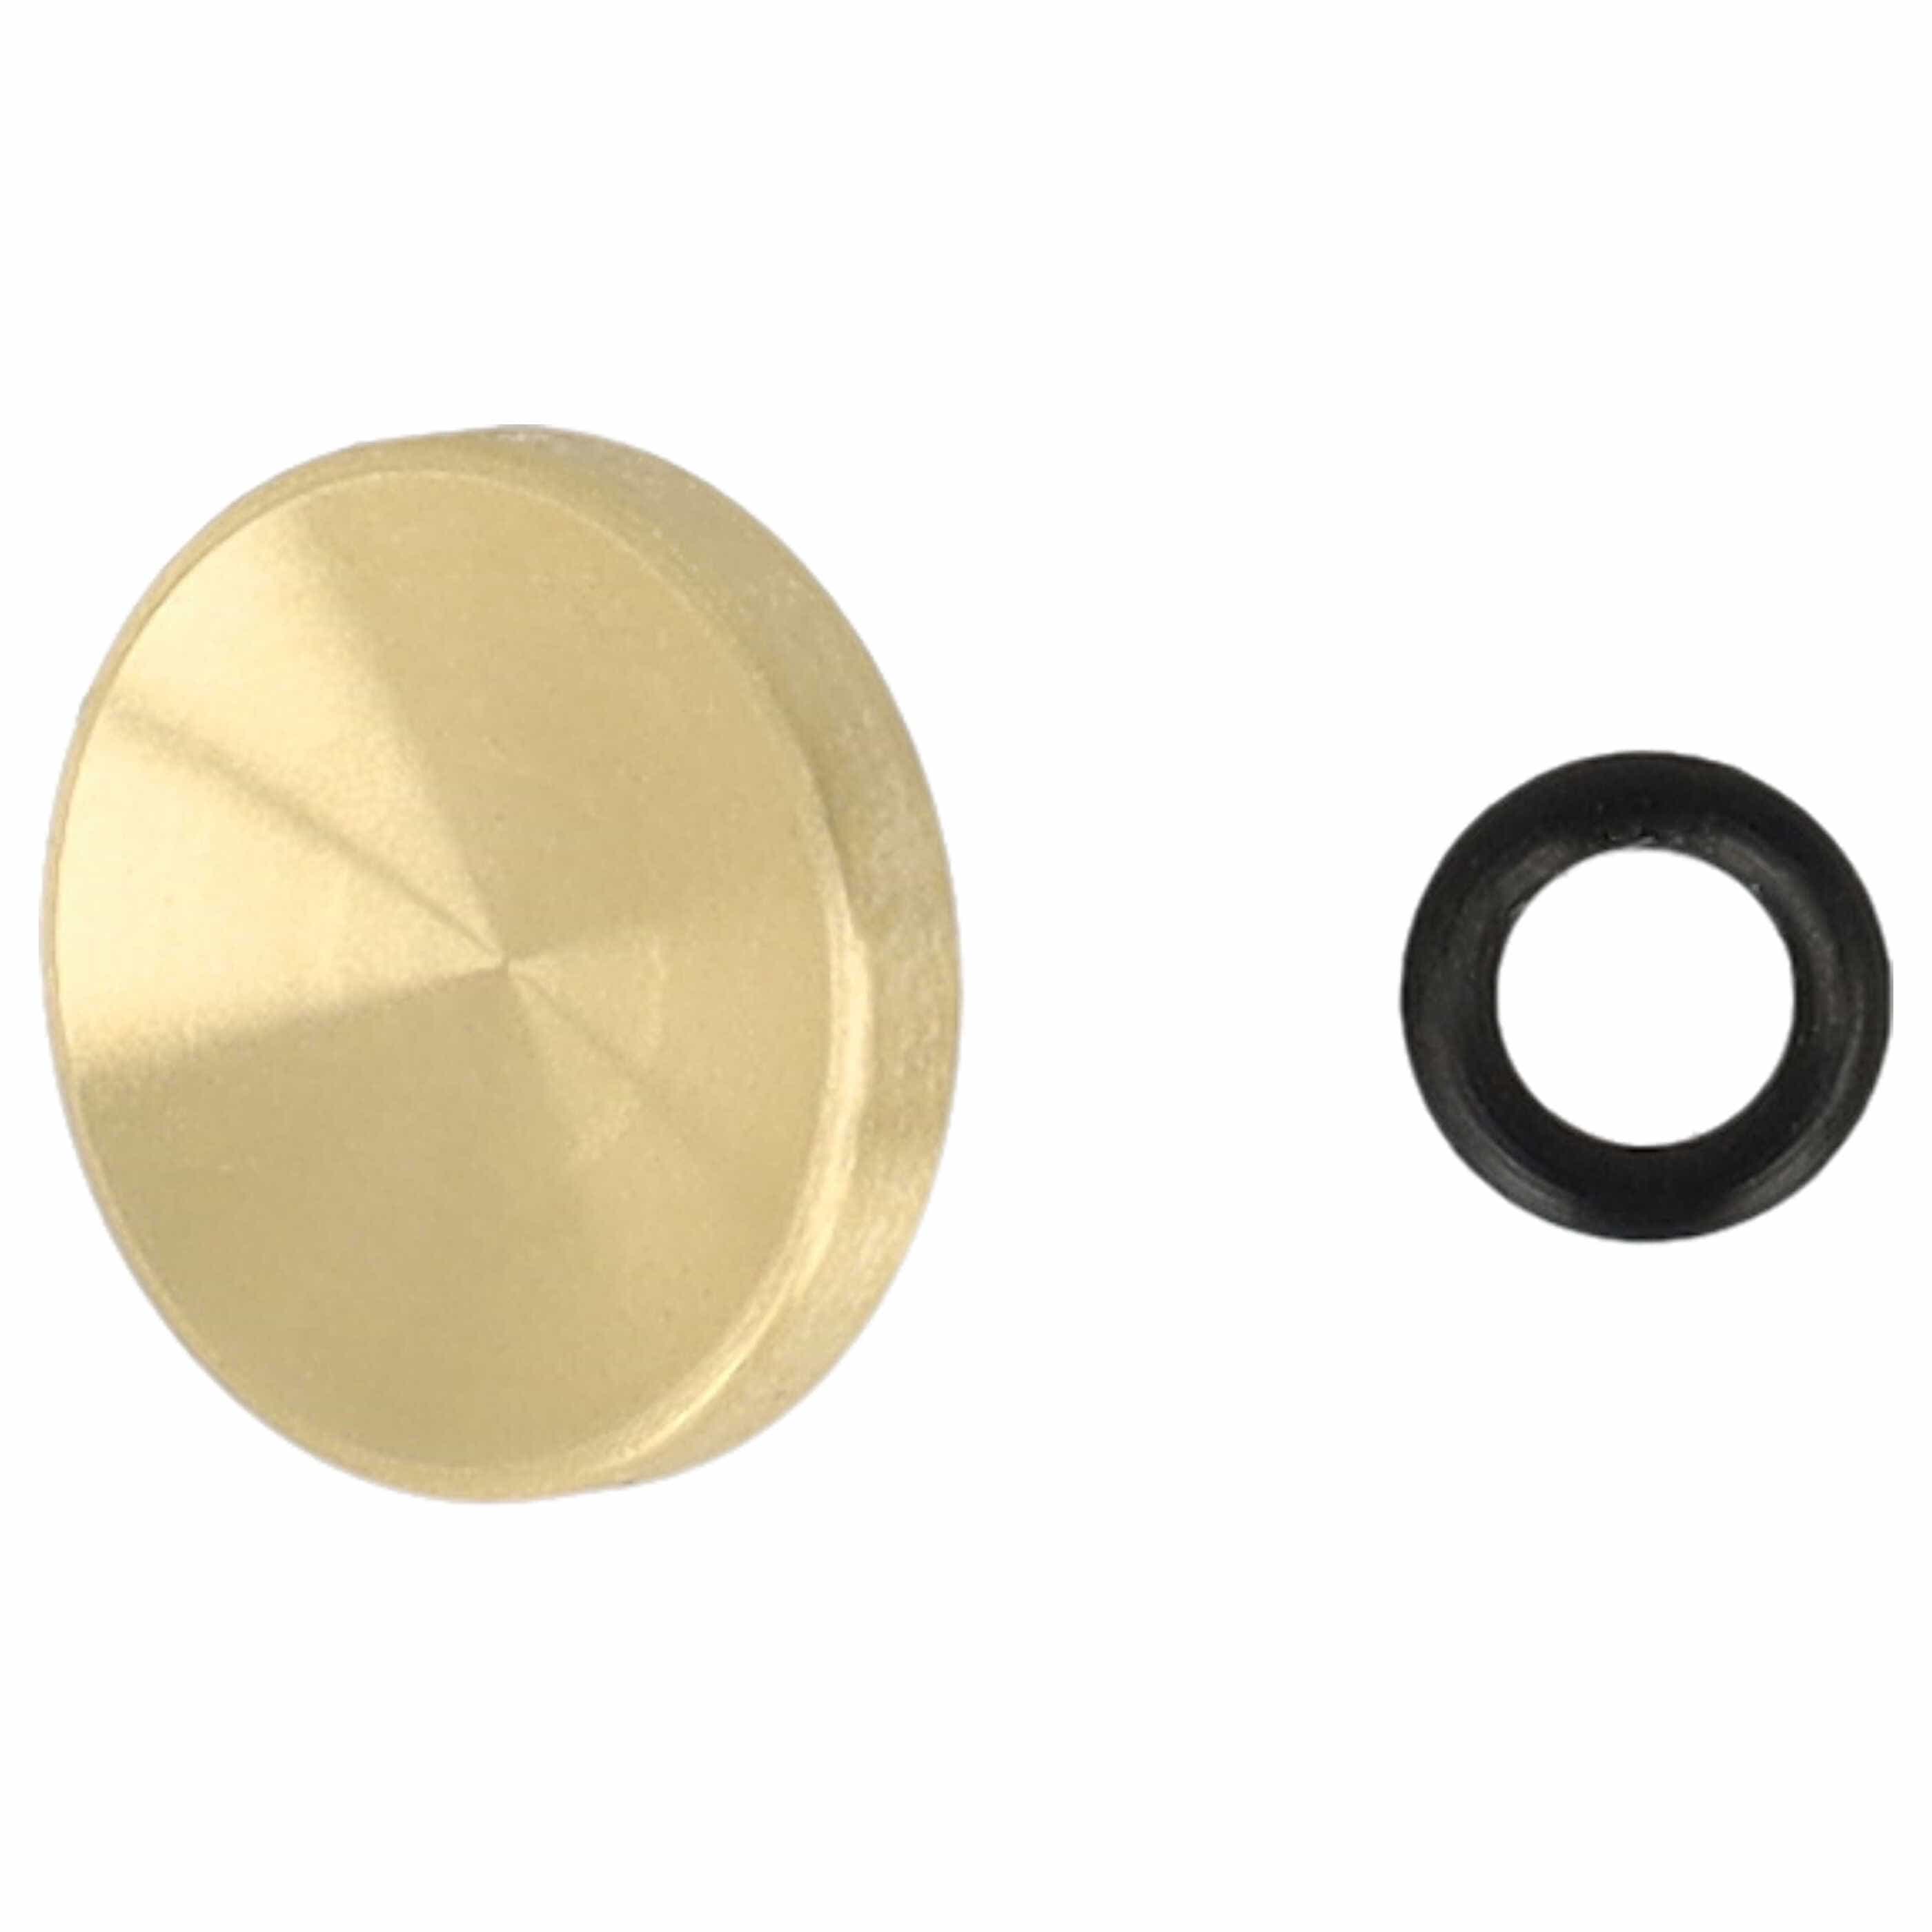 Release Button suitable for X-E1 FujifilmCamera etc. - Metal, Gold